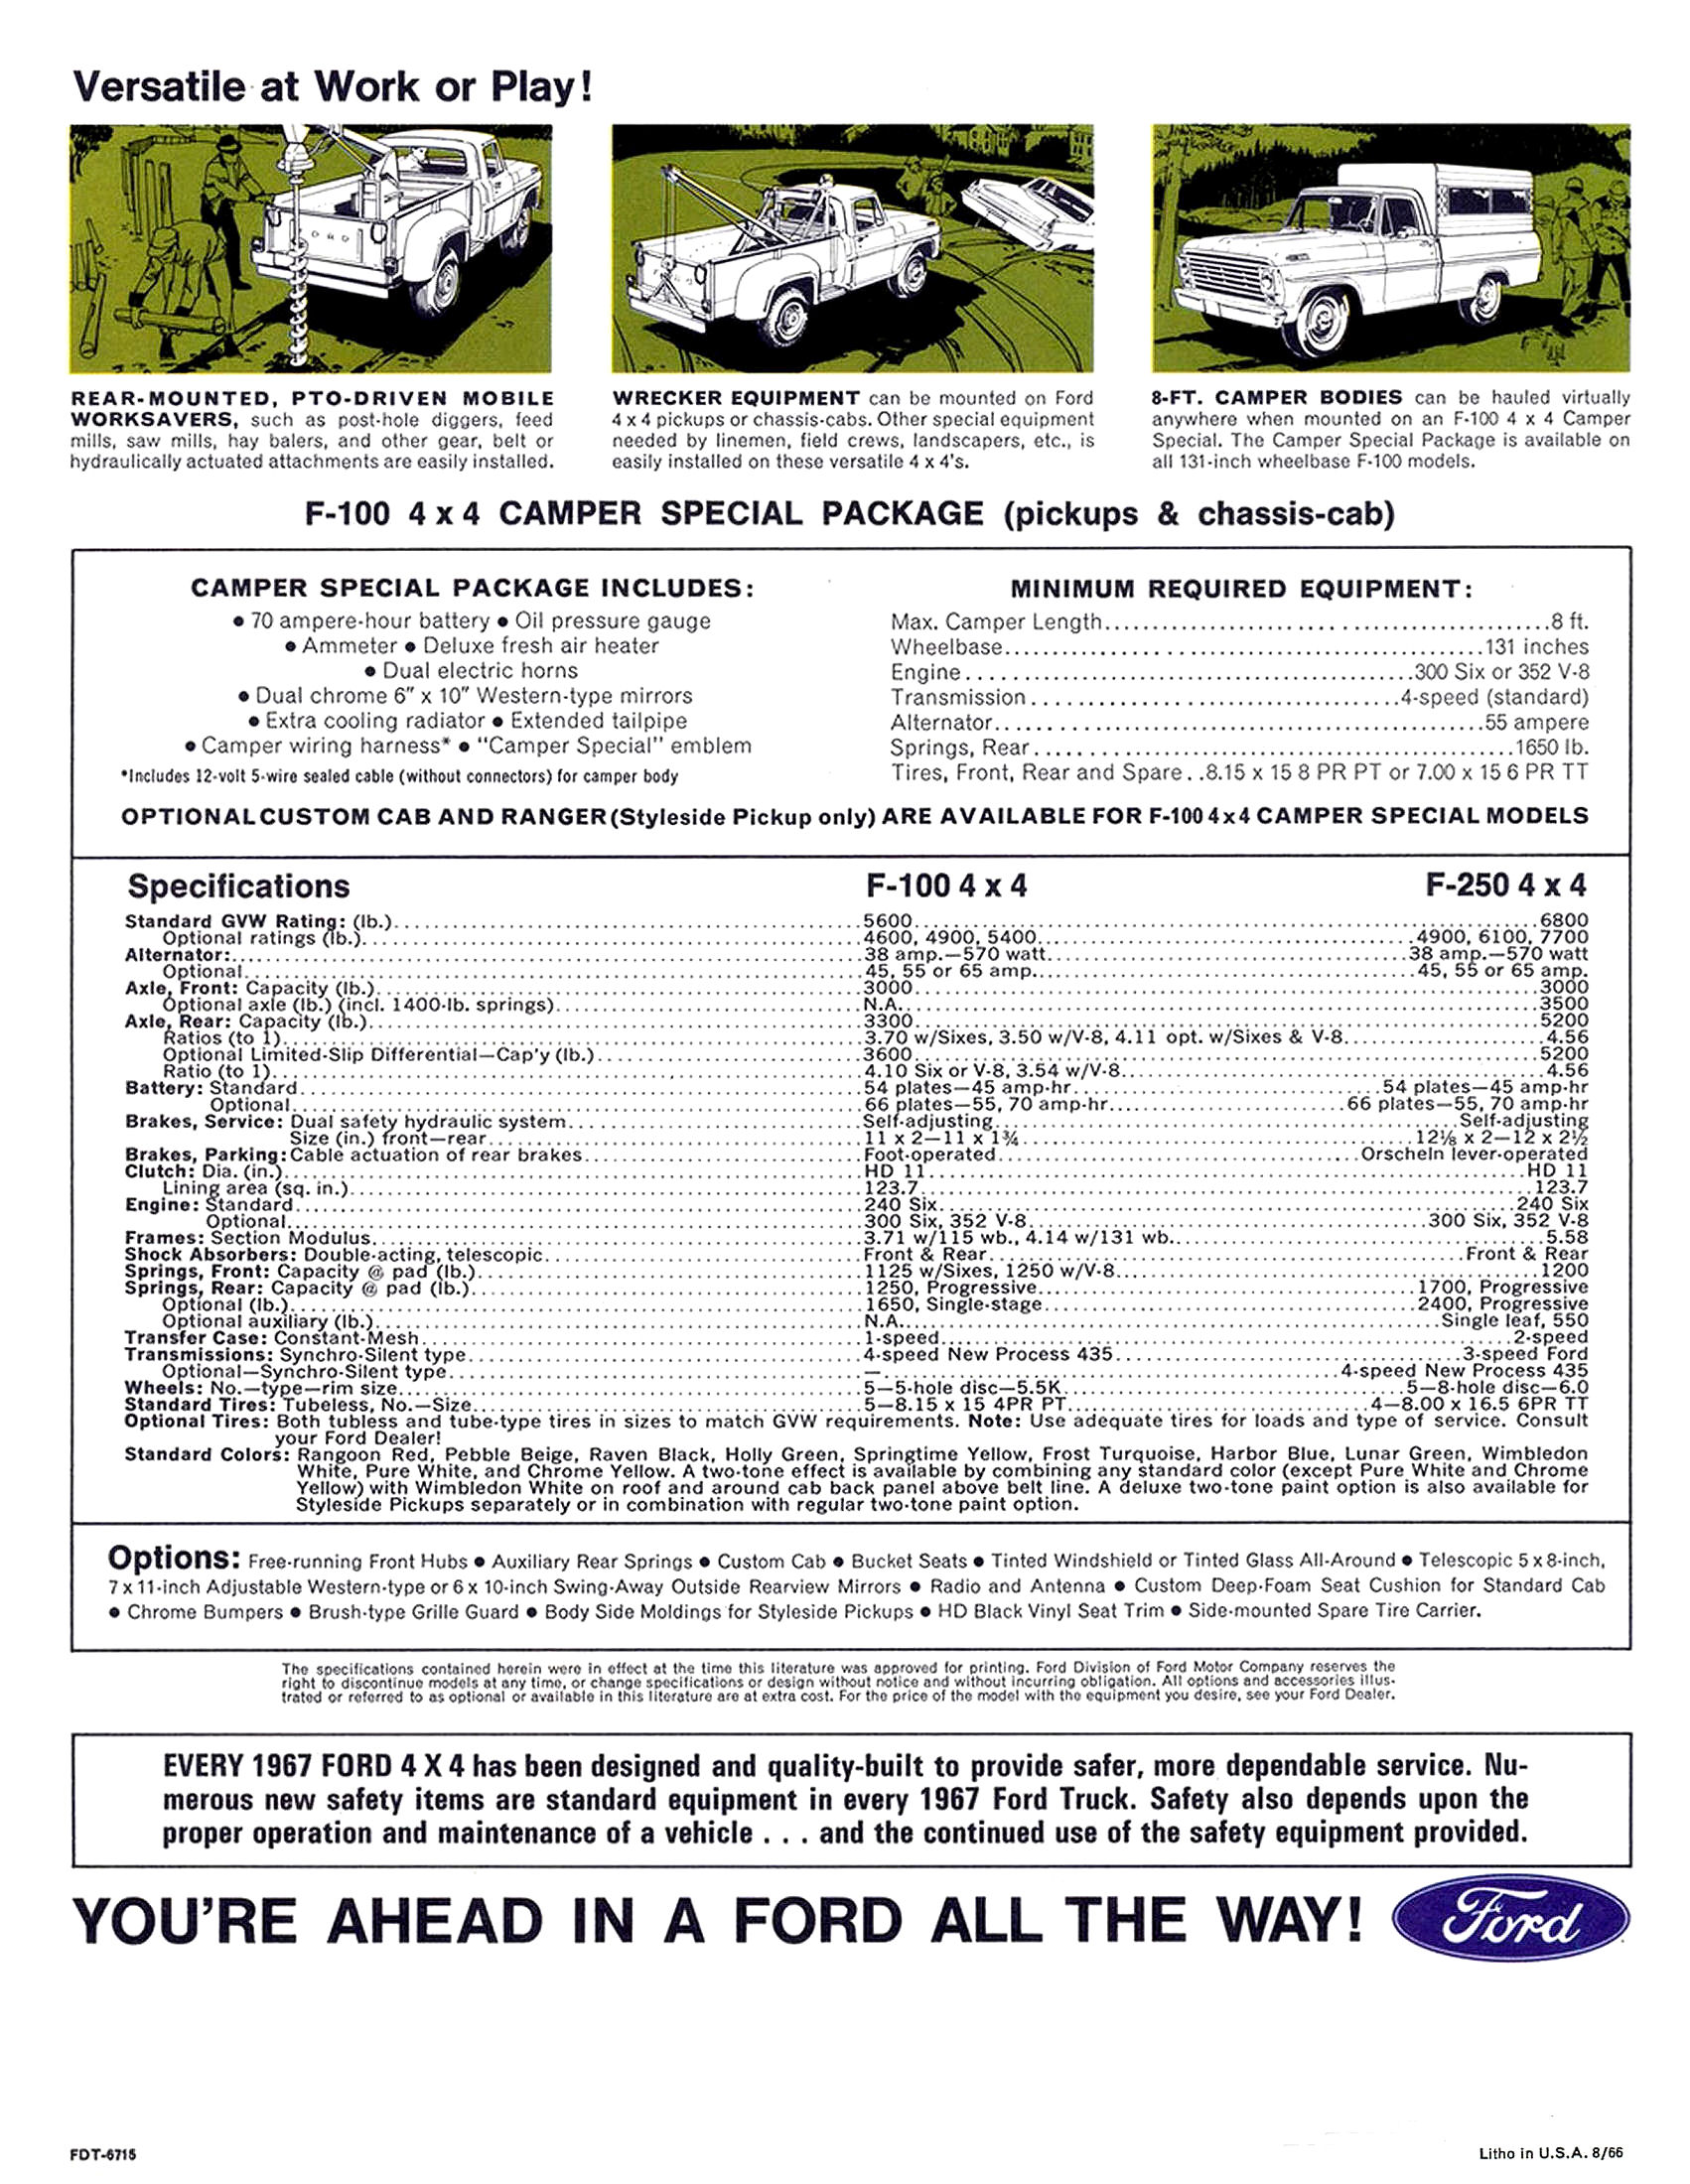 1967 Ford F-100 F-250 4WD Trucks-06